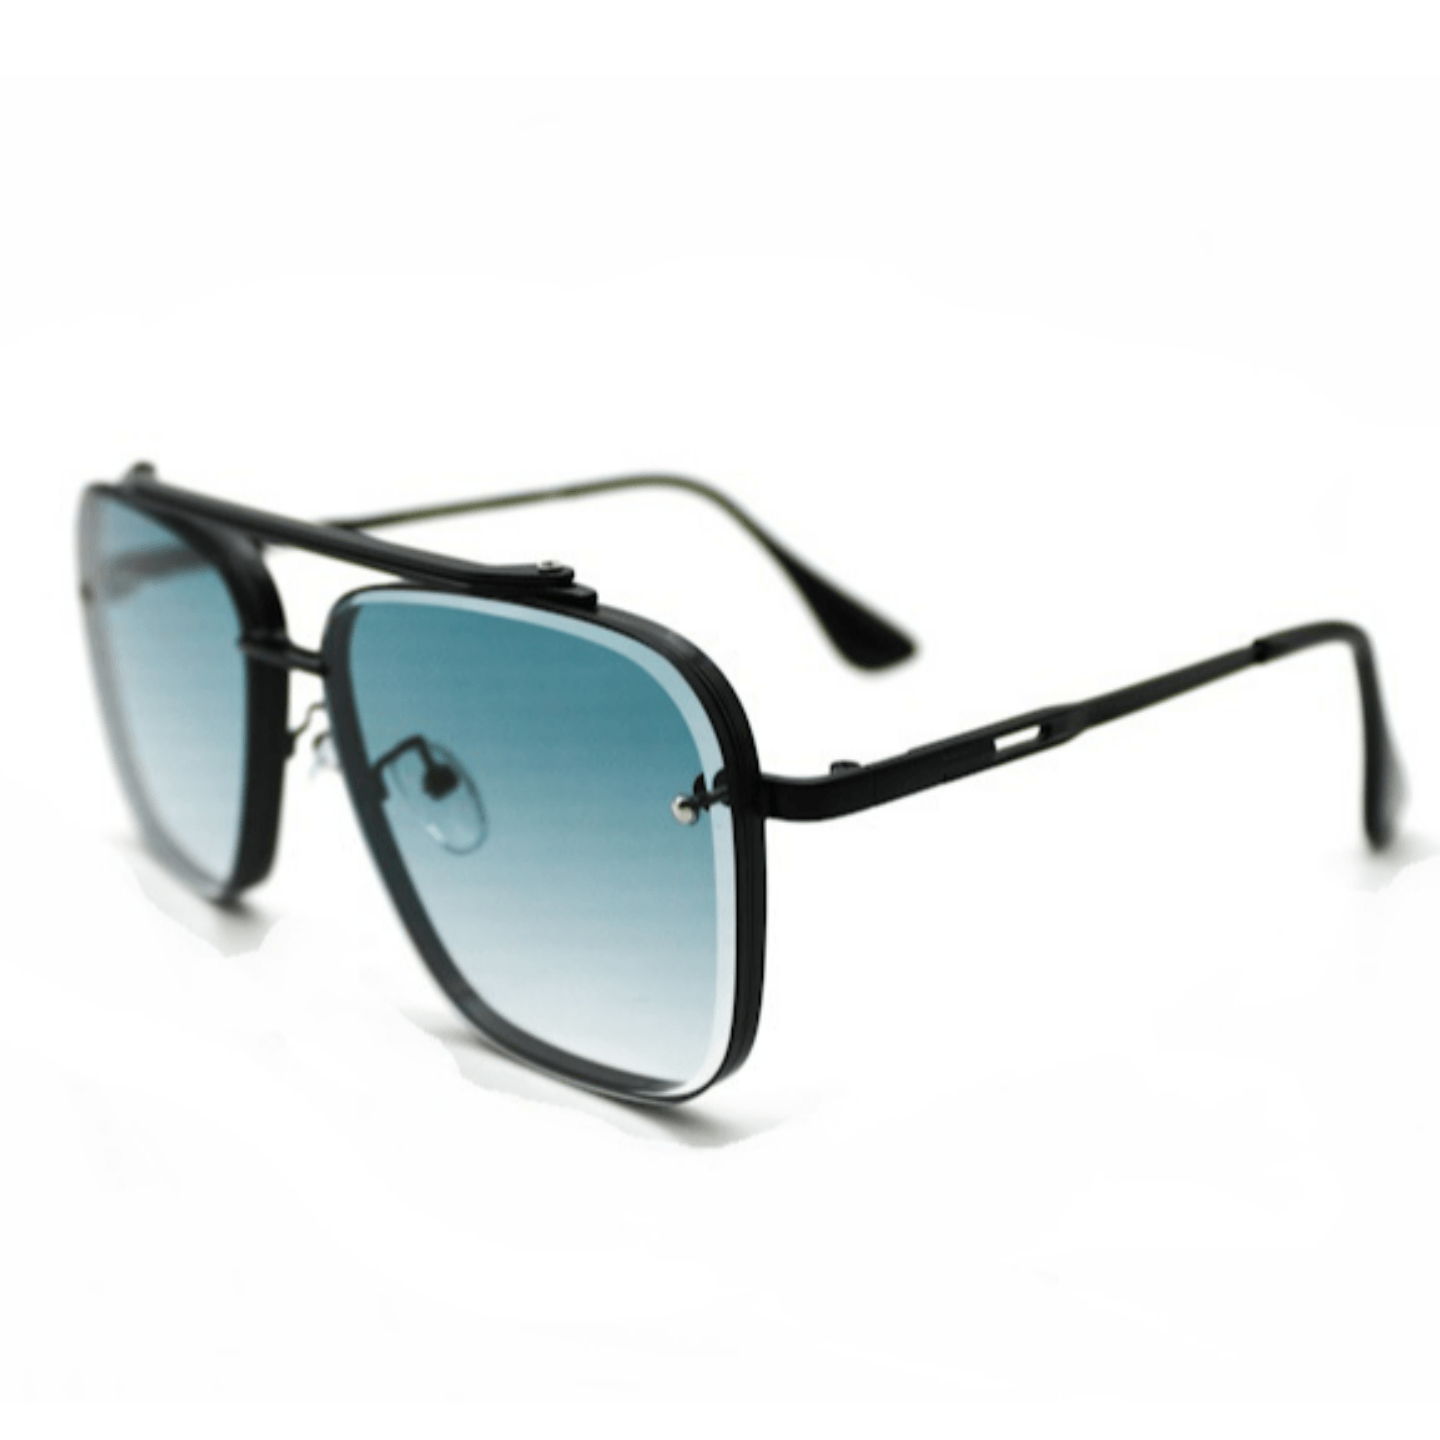 Black Sky Blue Sunglasses For Men and Women